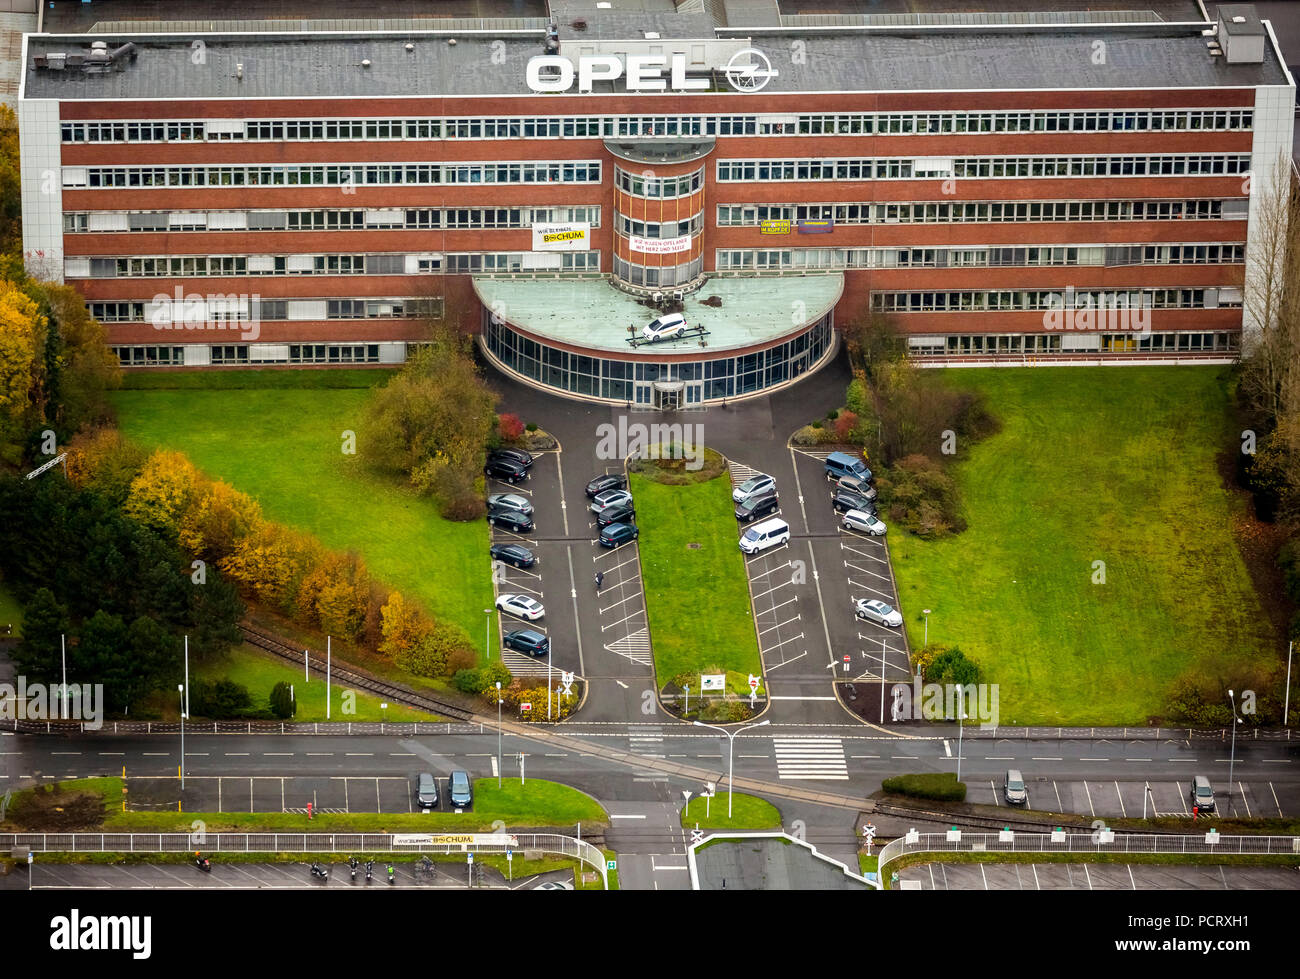 OPEL Verwaltungsgebäude wird besprochen, ein Monument zu werden, Banner mit der Aufschrift "Wir OPELaner waren mit Herz und Seele", drohende Schließung des Opel-Werks in Bochum, Bochum, Ruhrgebiet, Nordrhein-Westfalen, Deutschland Stockfoto